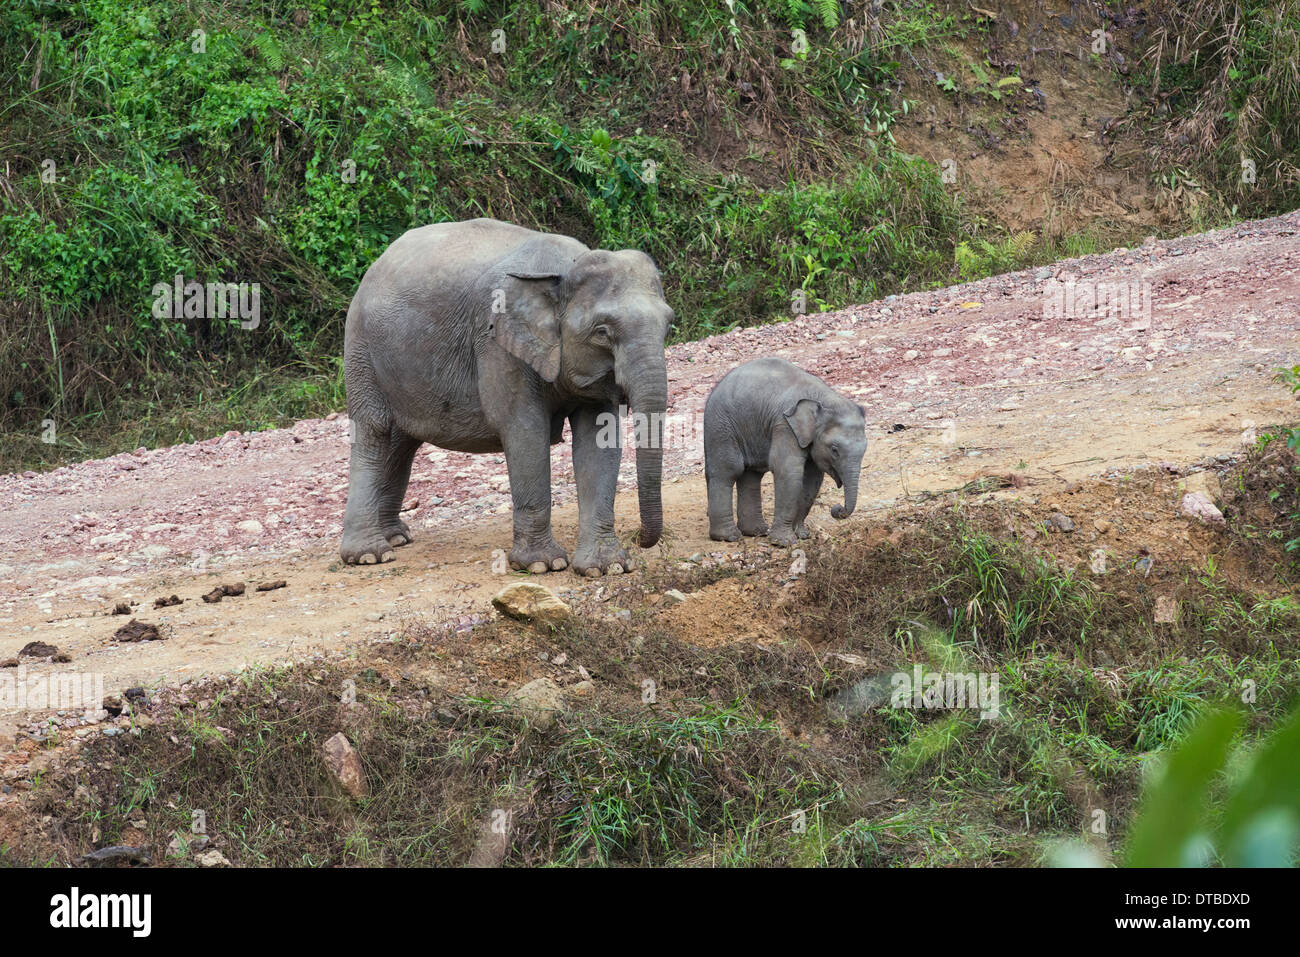 El elefante asiático (Elephas maximus). La madre y el ternero, parte de un pequeño rebaño, en una pista sin asfaltar en el Área de Conservación del valle Danum Foto de stock